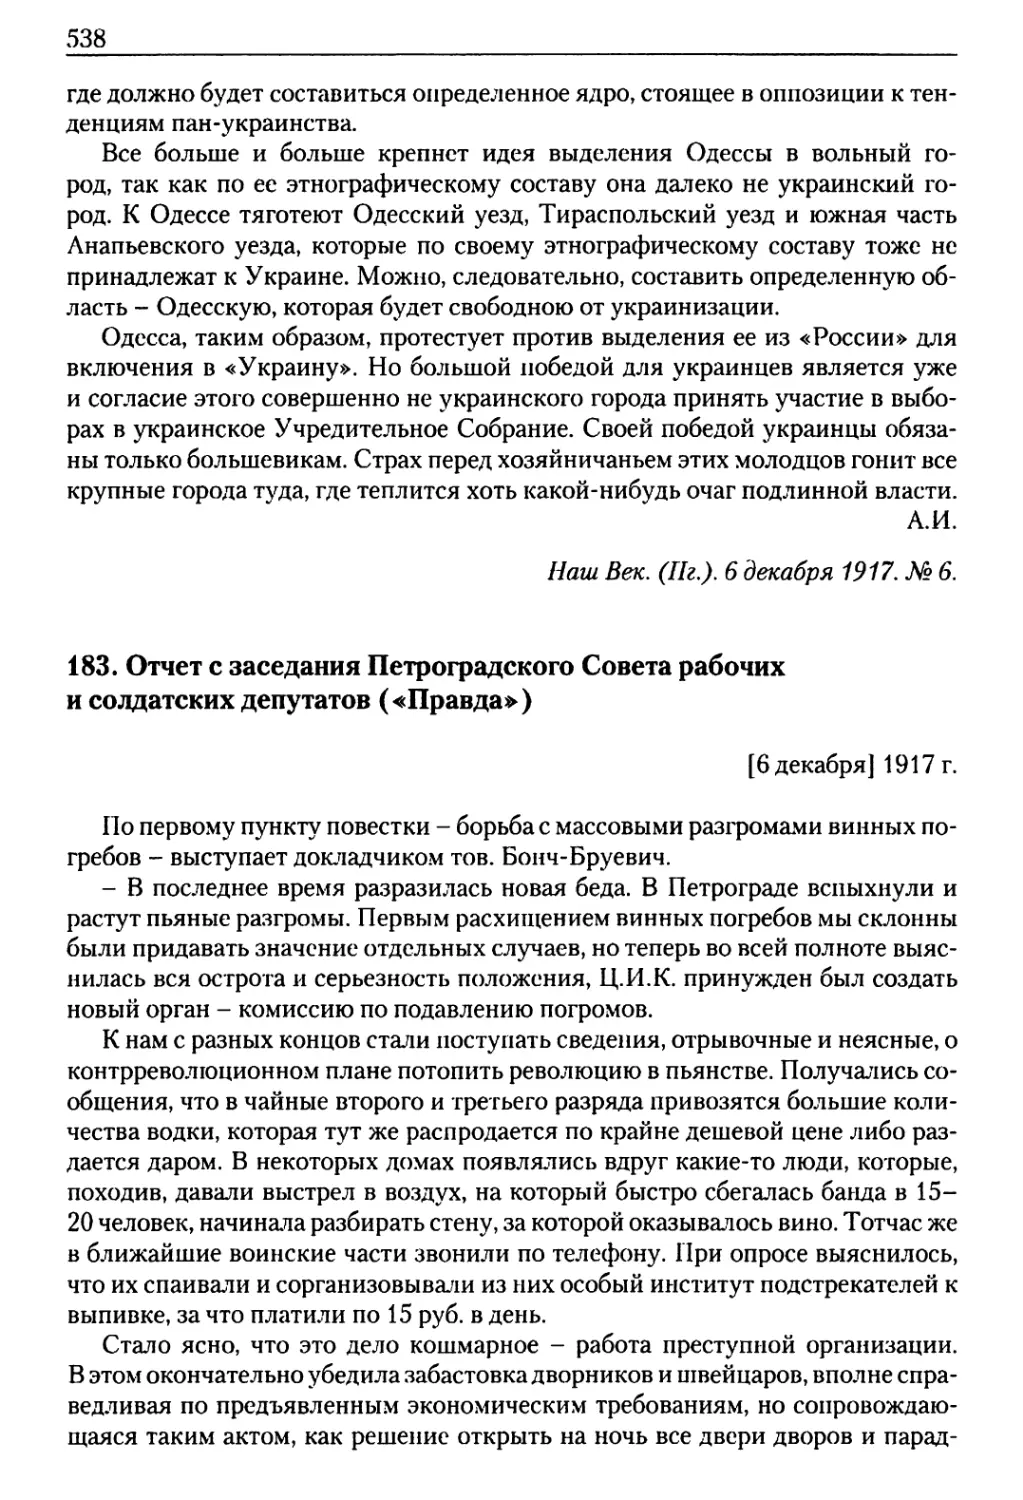 183. Отчет с заседания Петроградского Совета рабочих и солдатских депутатов